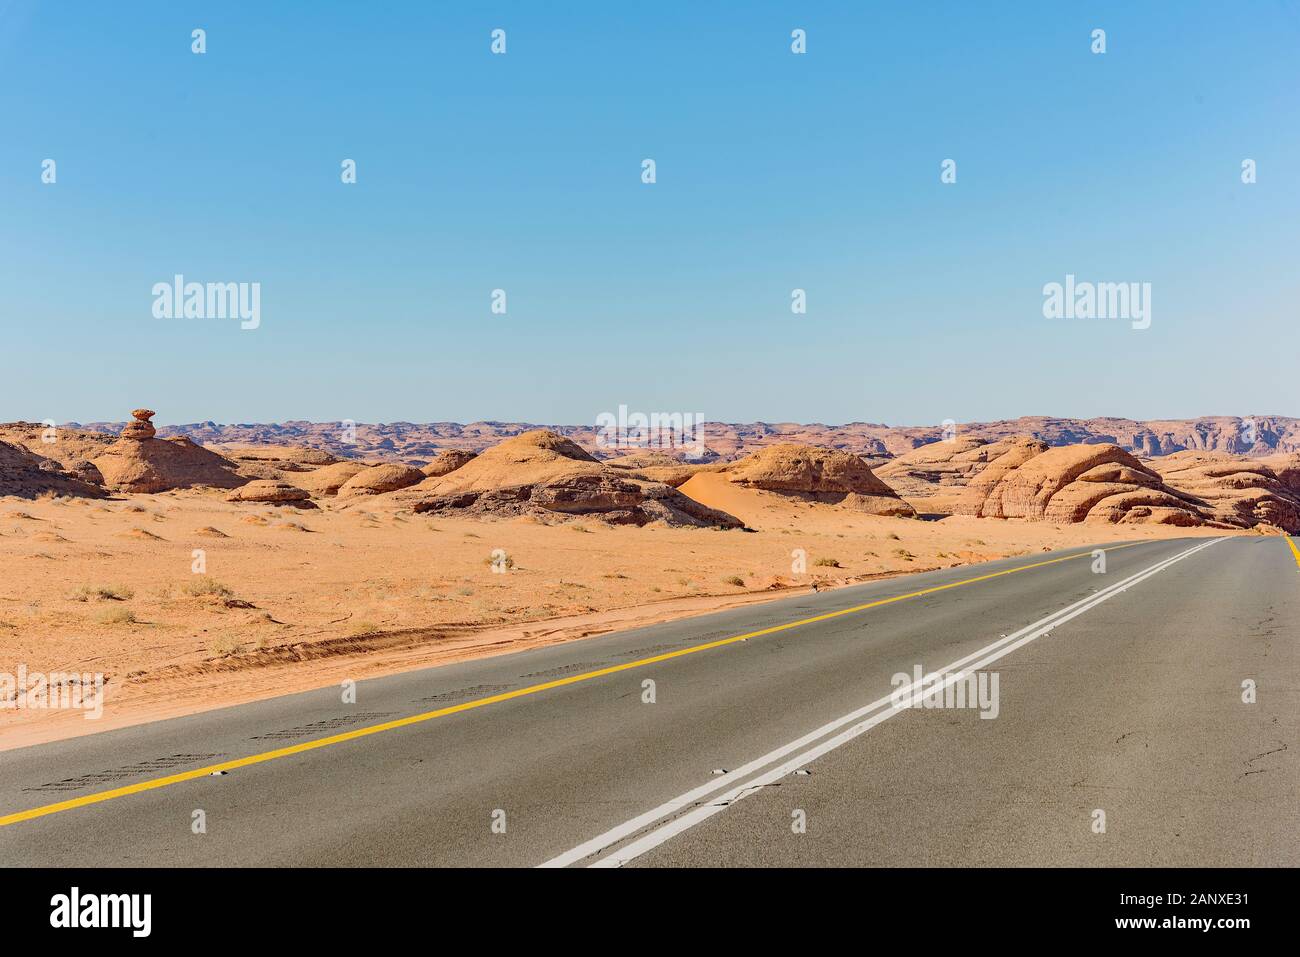 Désert paysage de la route - Arabie Saoudite Banque D'Images